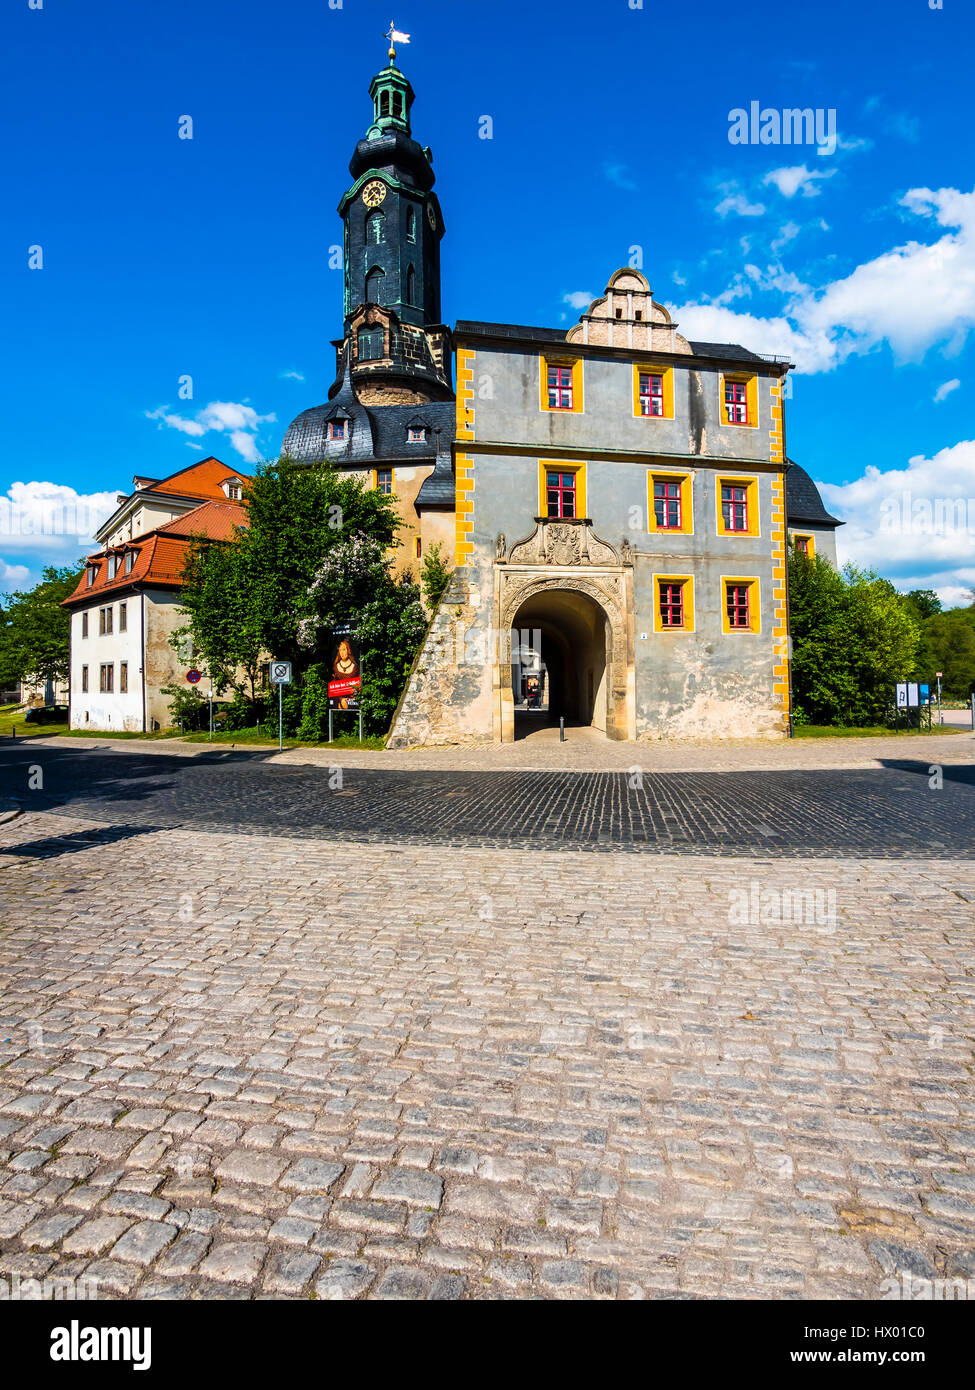 Germany, Weimar, Gruener Markt with city castle Stock Photo